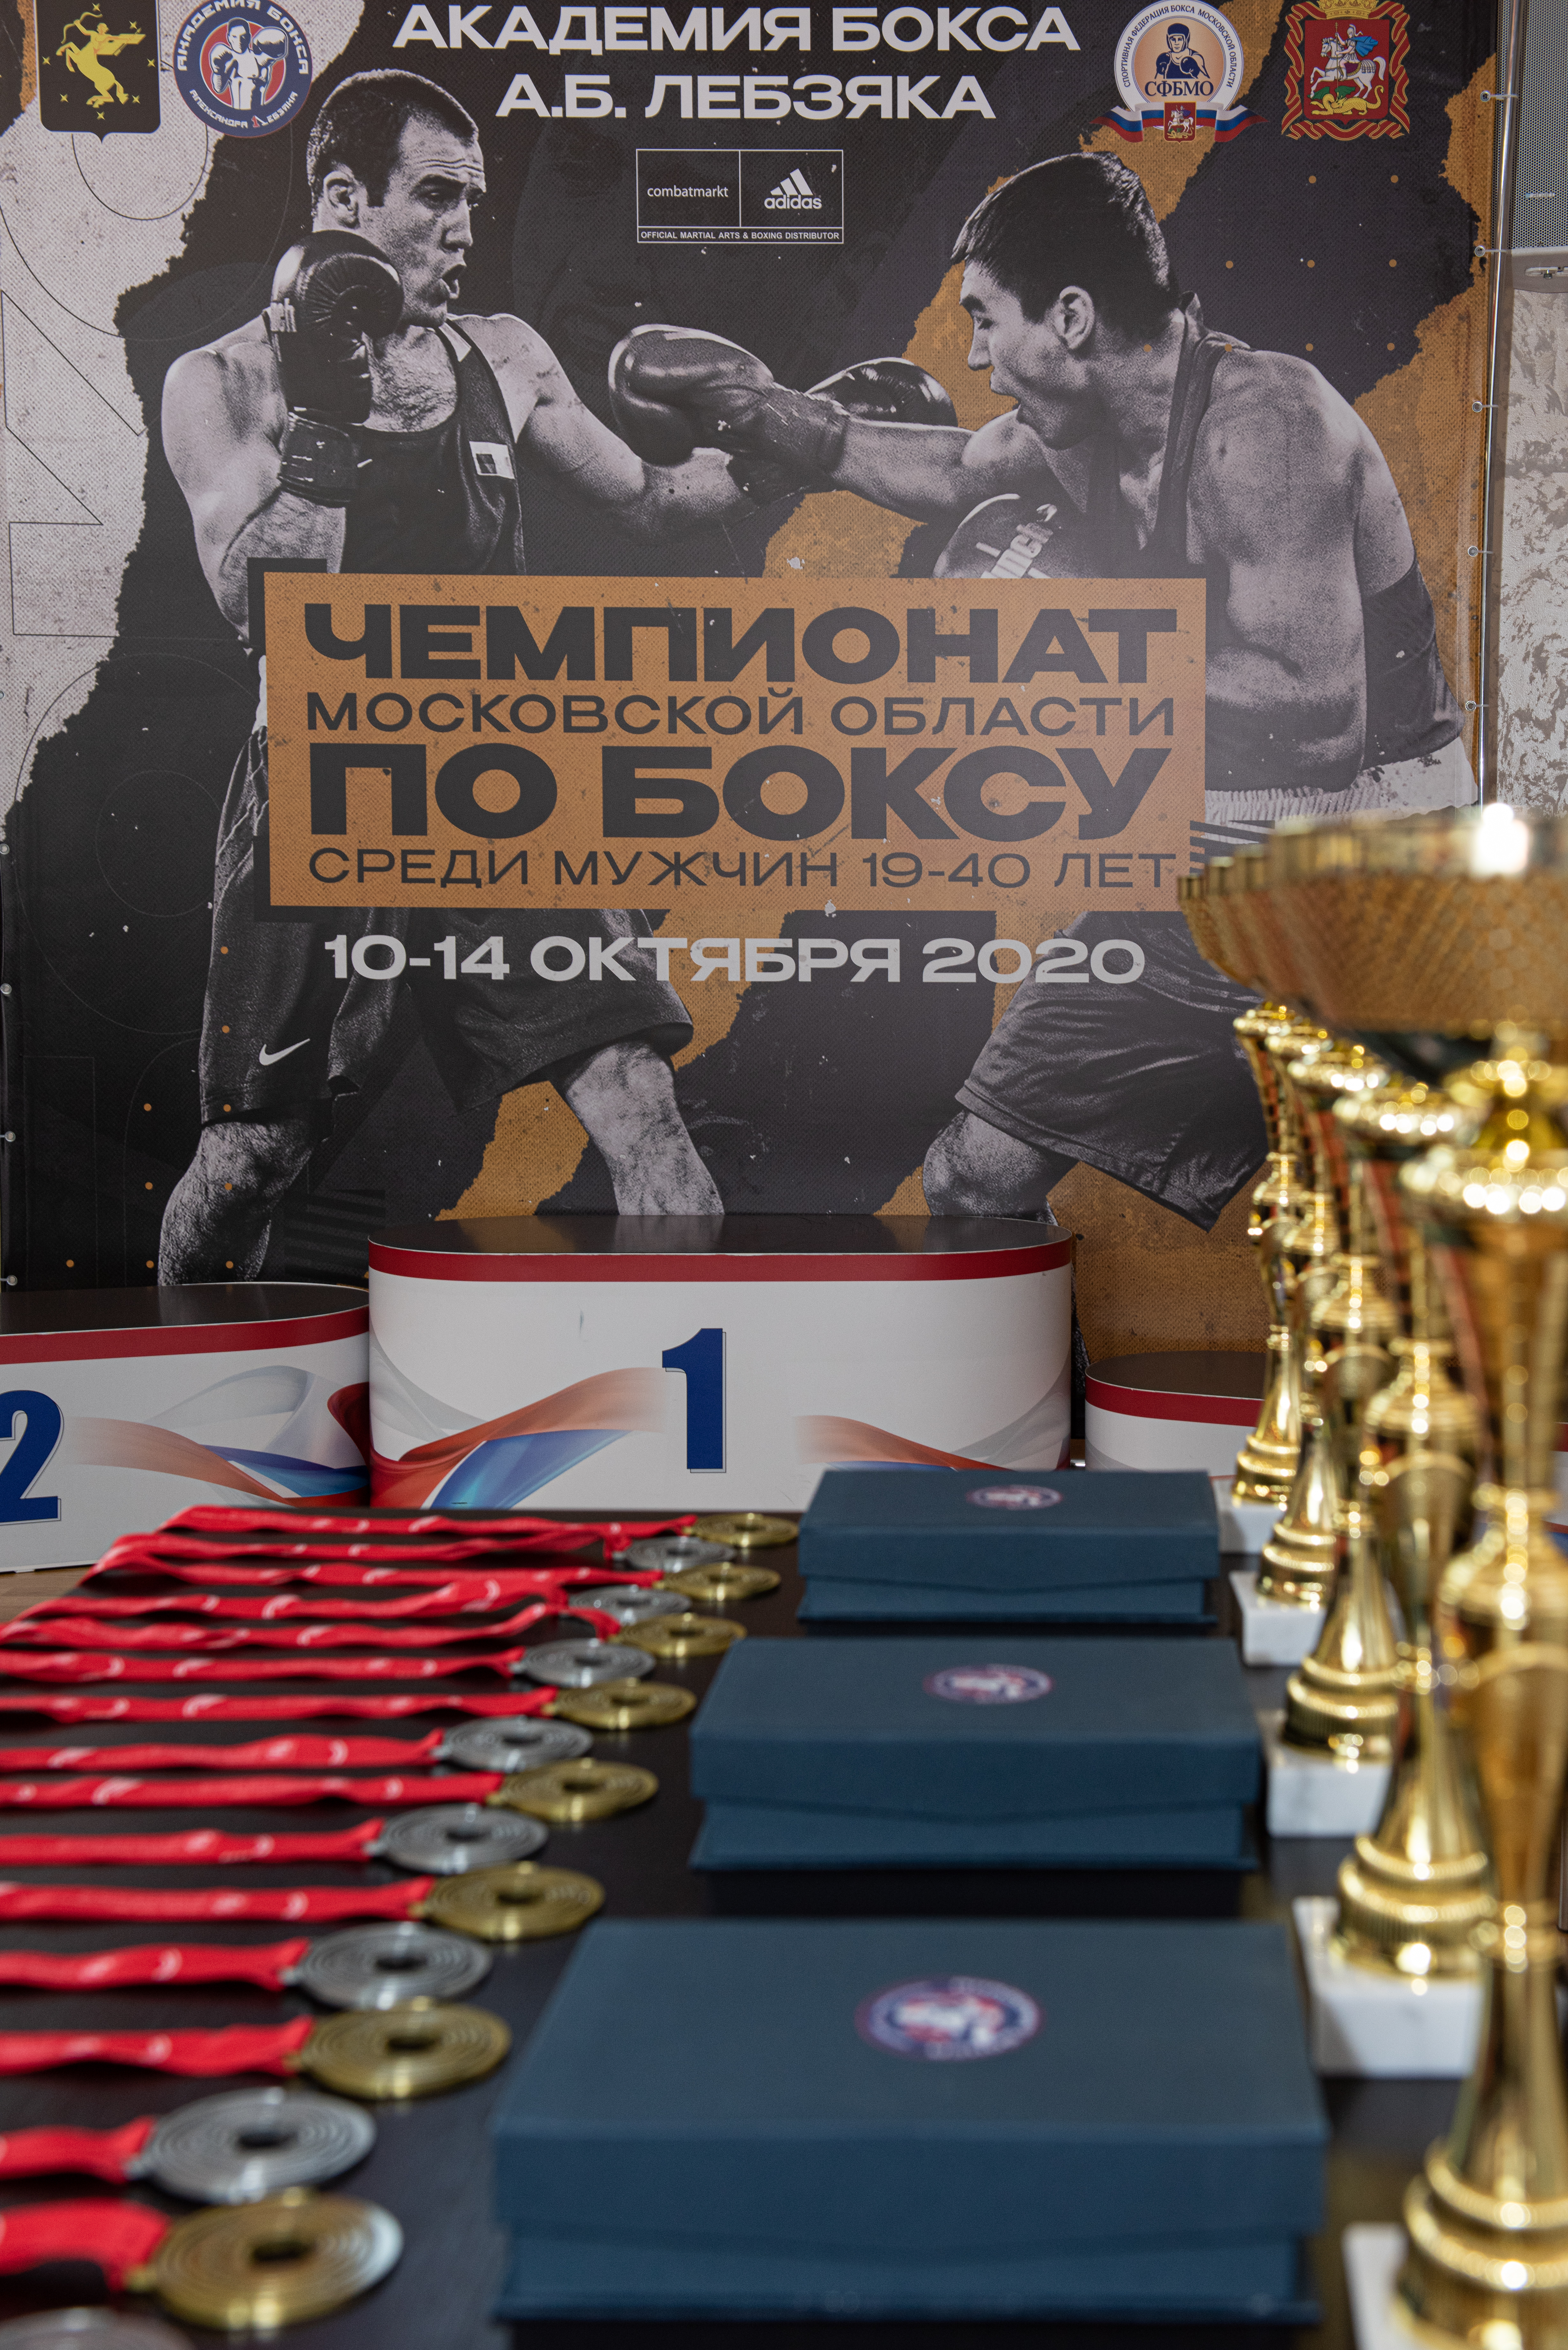 Чемпионат Московской области по боксу среди мужчин 19-40 лет